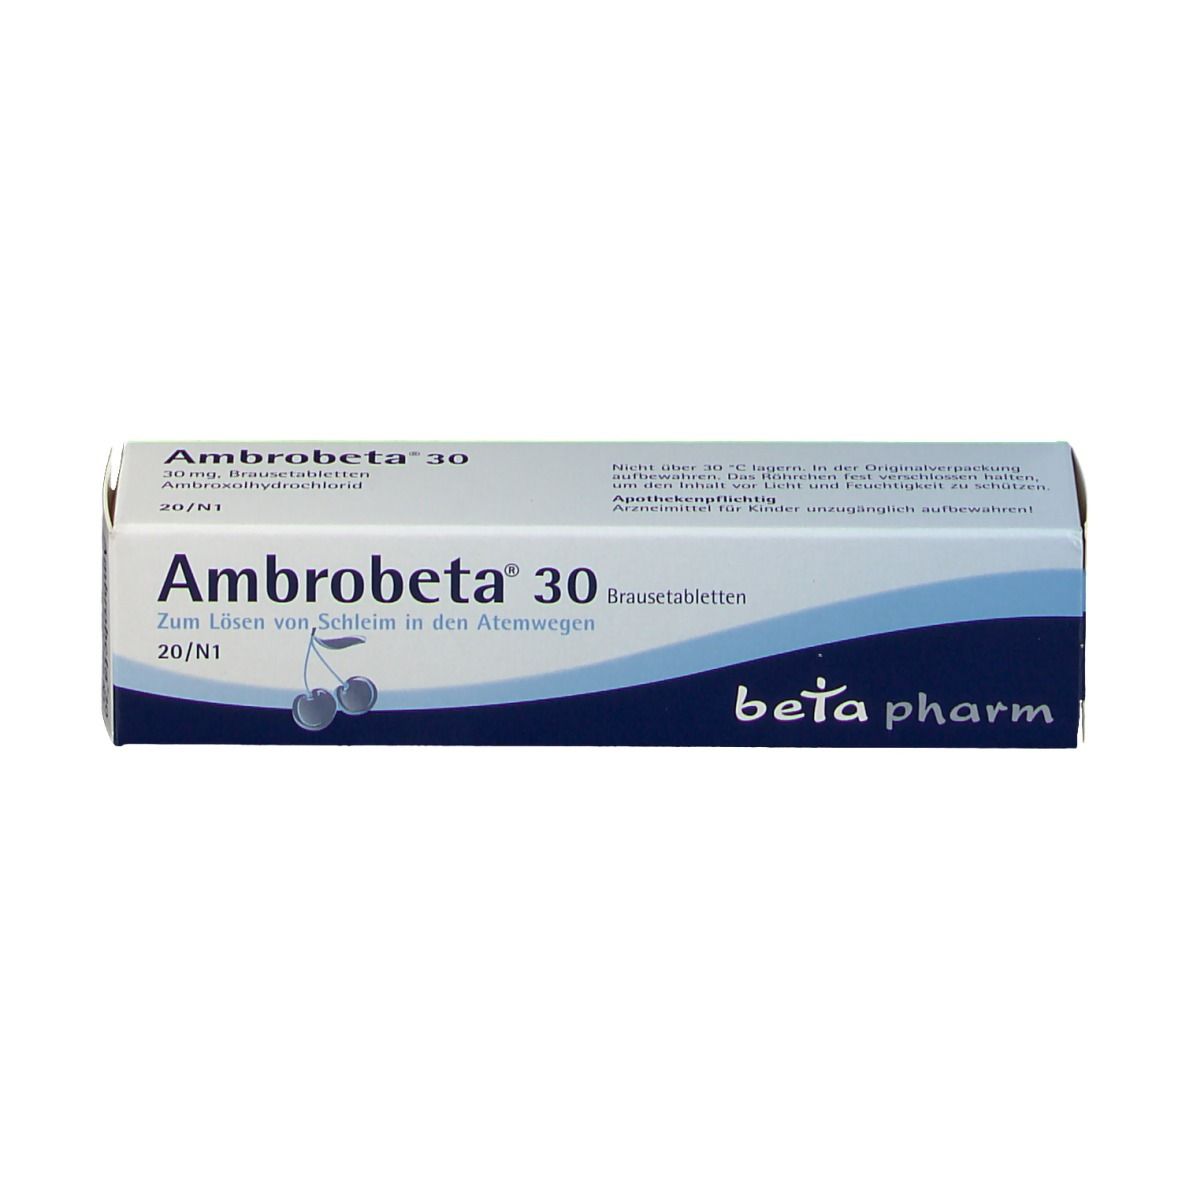 Ambrobeta® 30 Brausetabletten